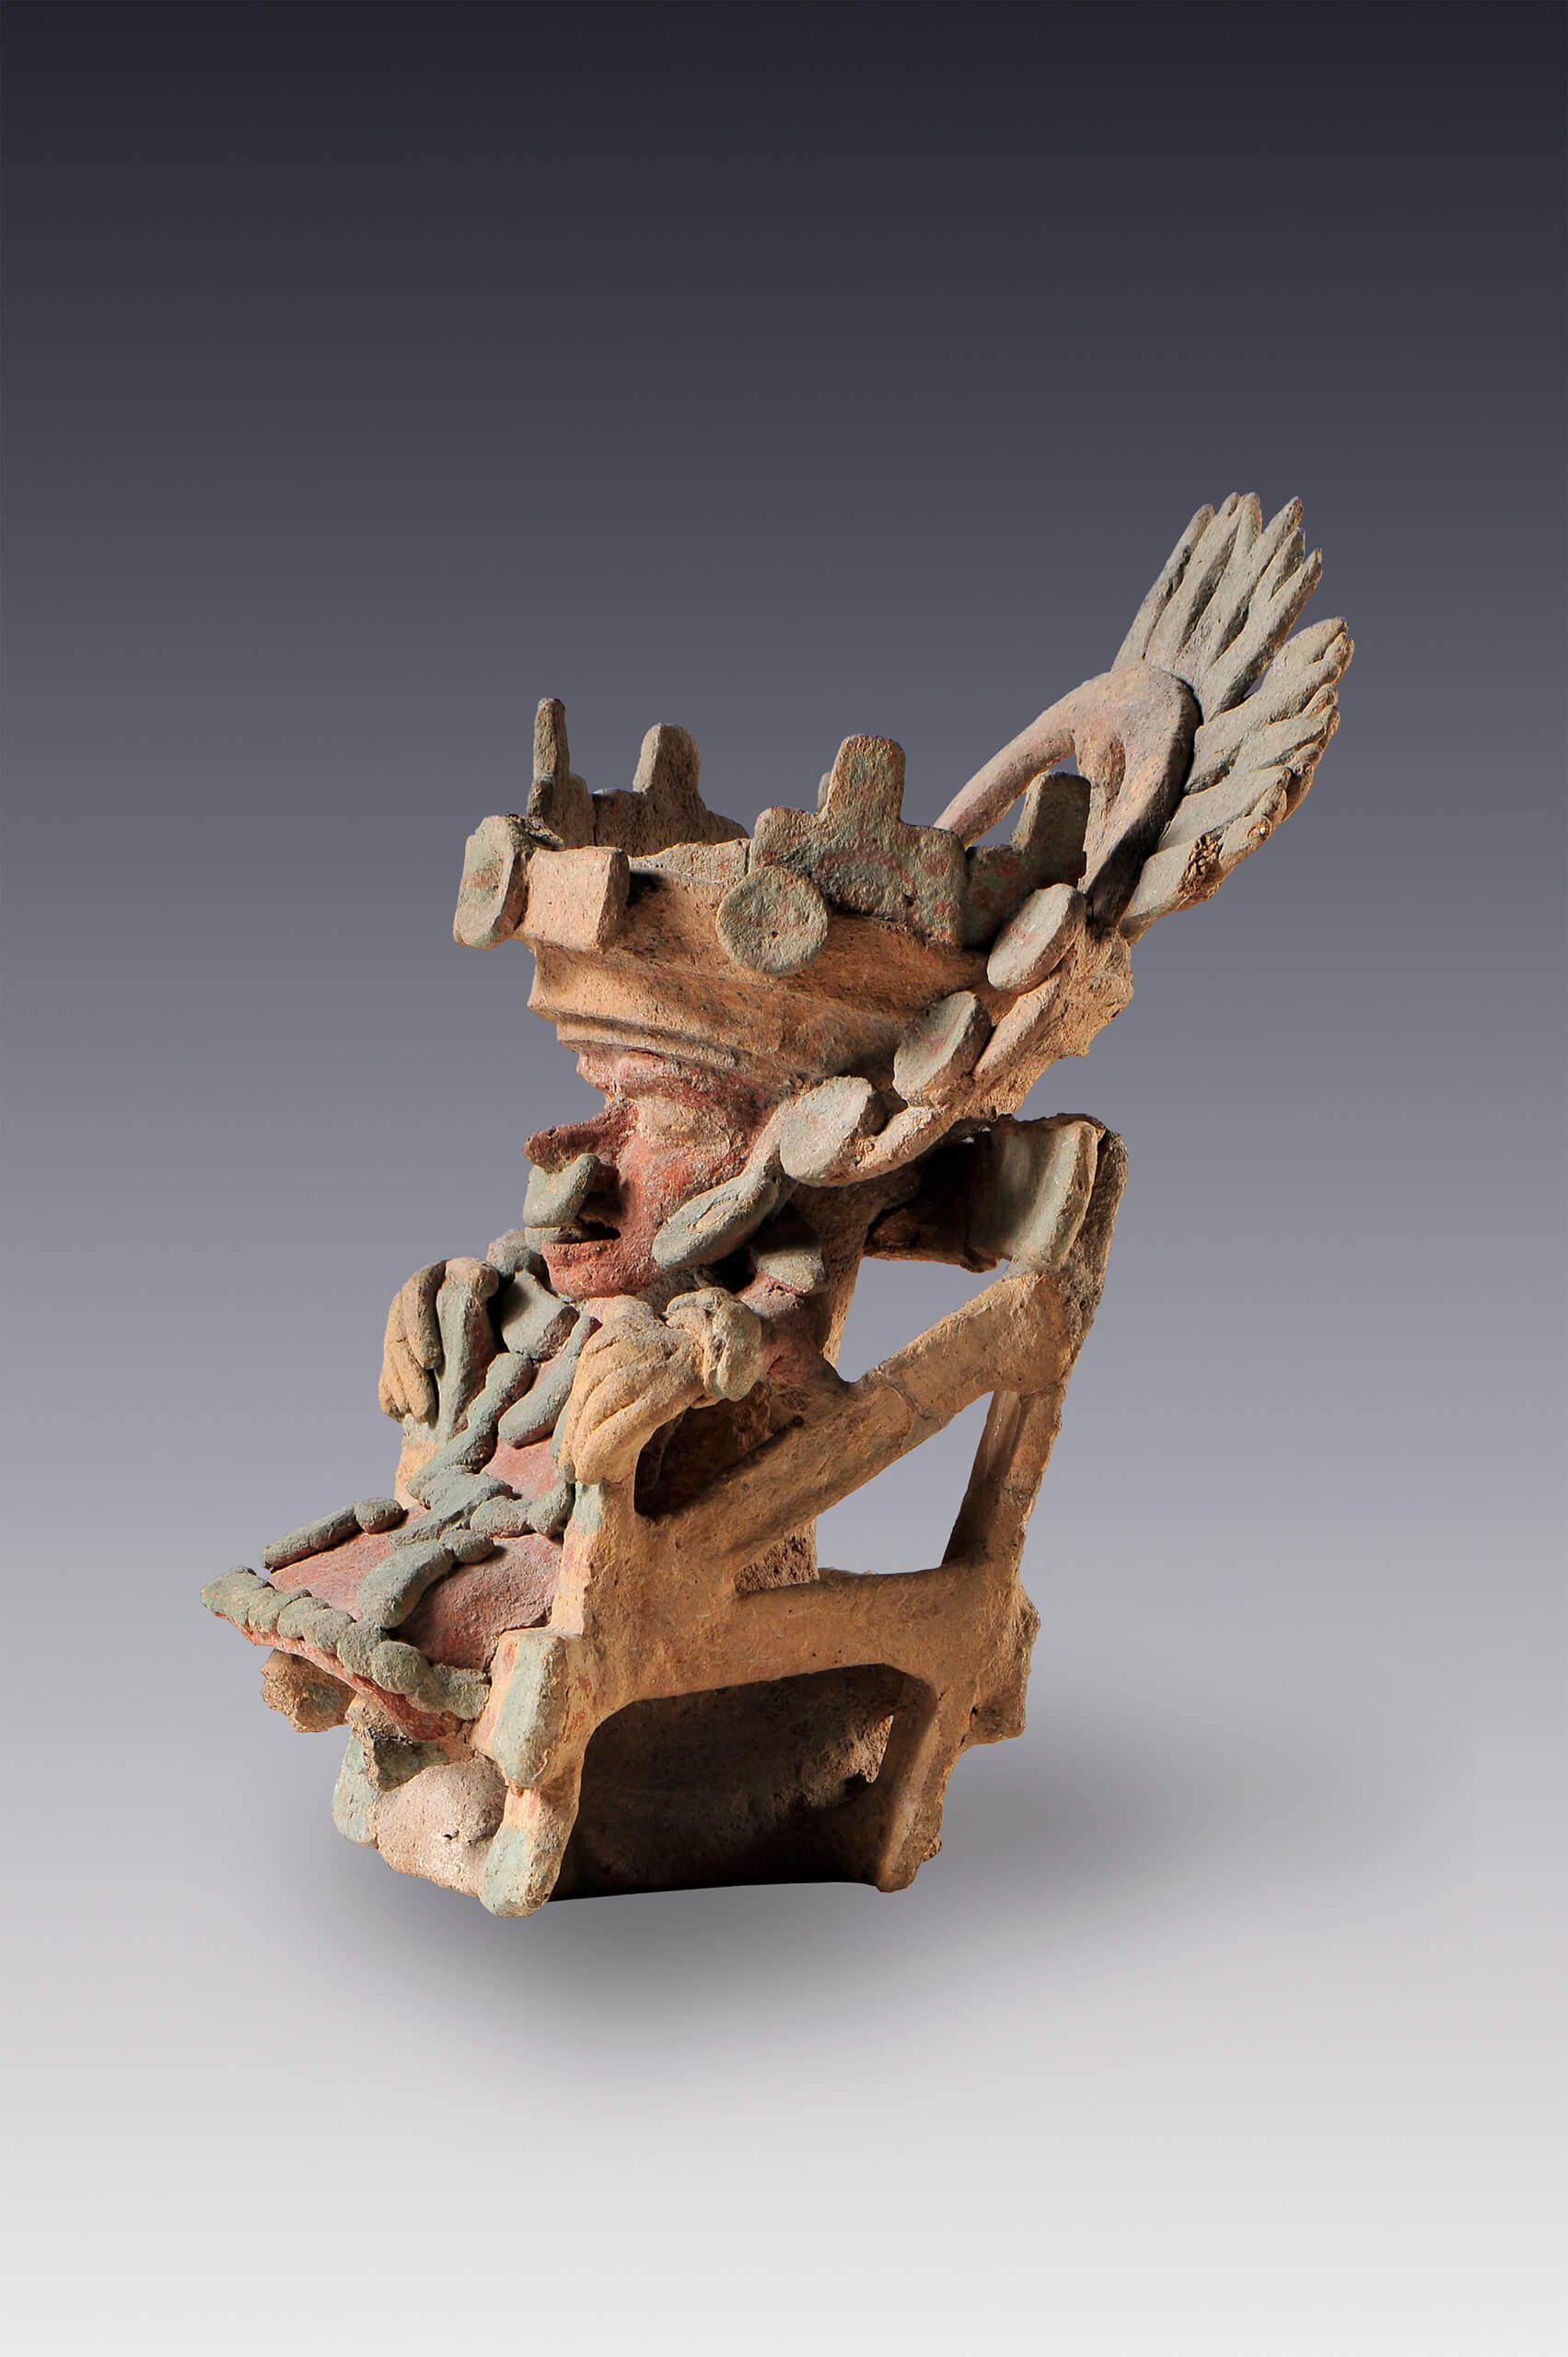 Señor en asiento (brasero) | El México antiguo. Salas de Arte Prehispánico | Museo Amparo, Puebla